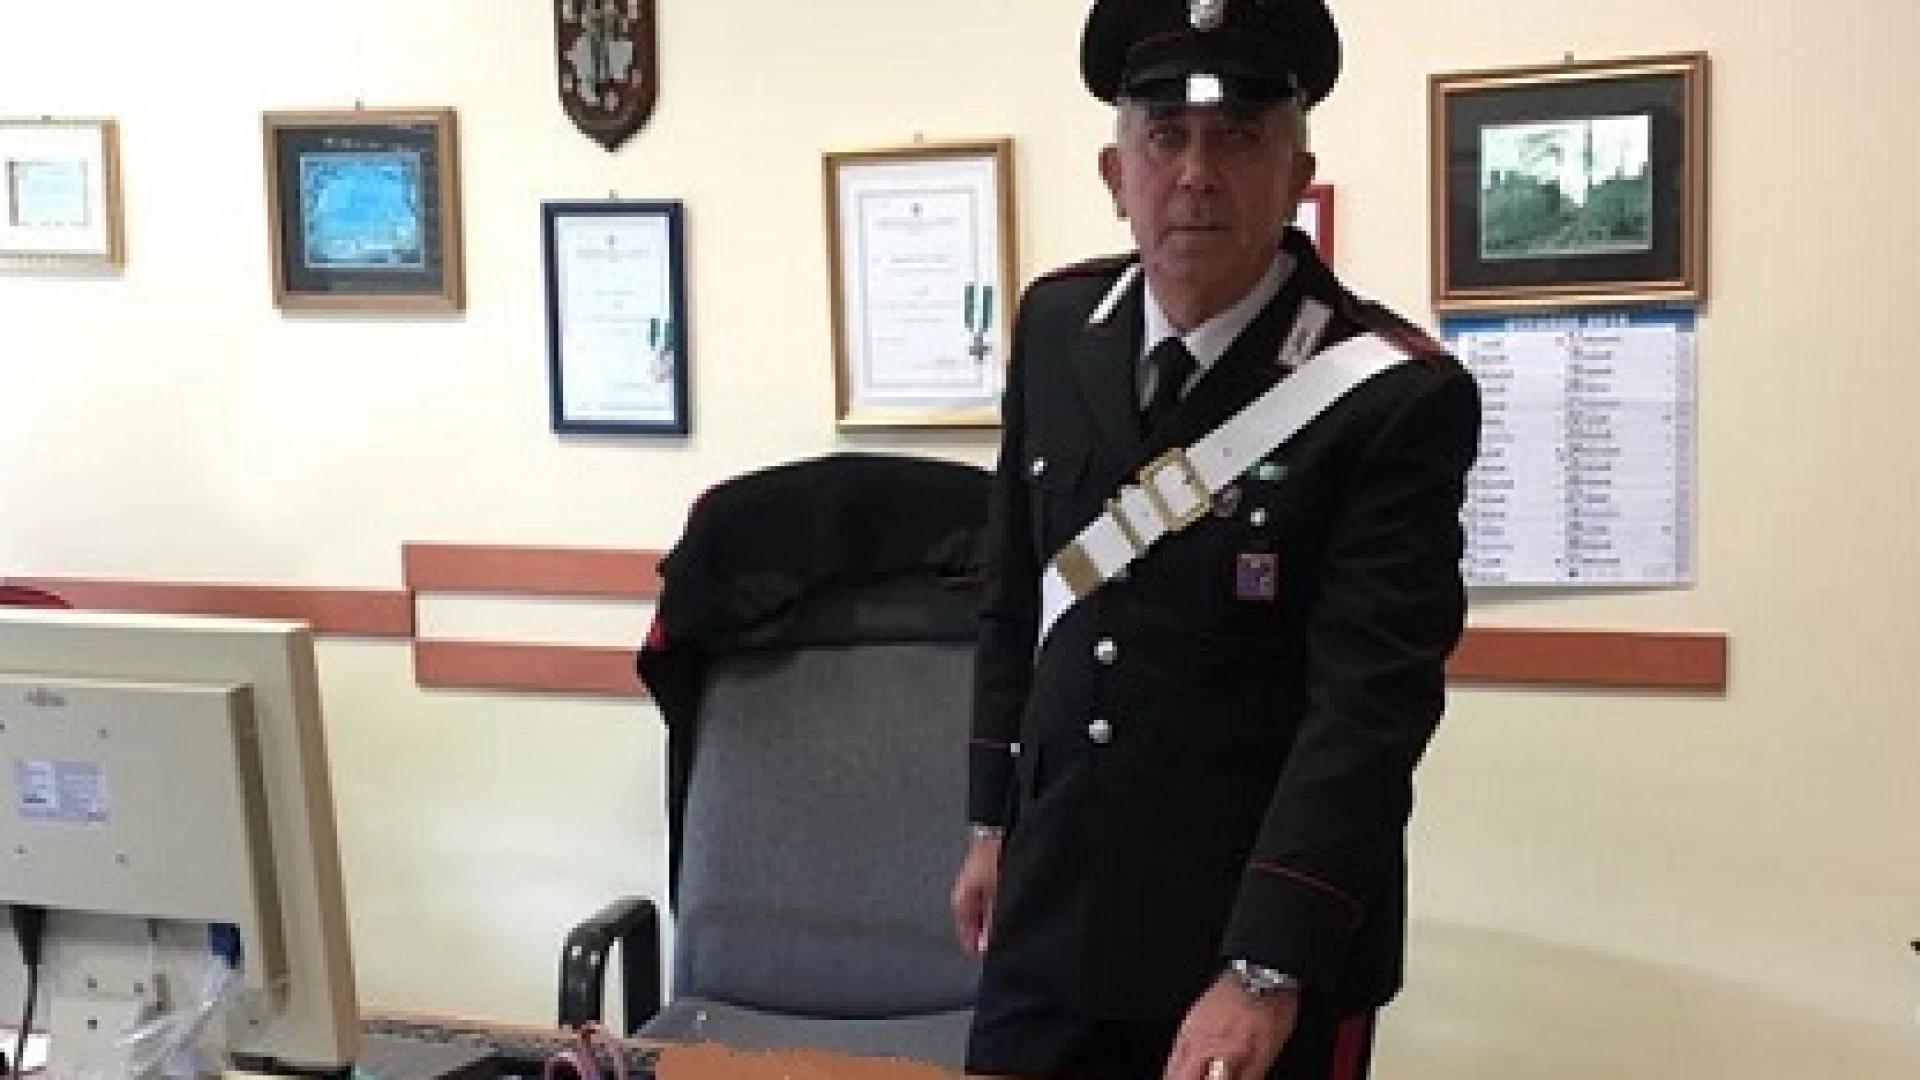 Agnone: I Carabinieri denunciano una persona per furto di uno smartphone